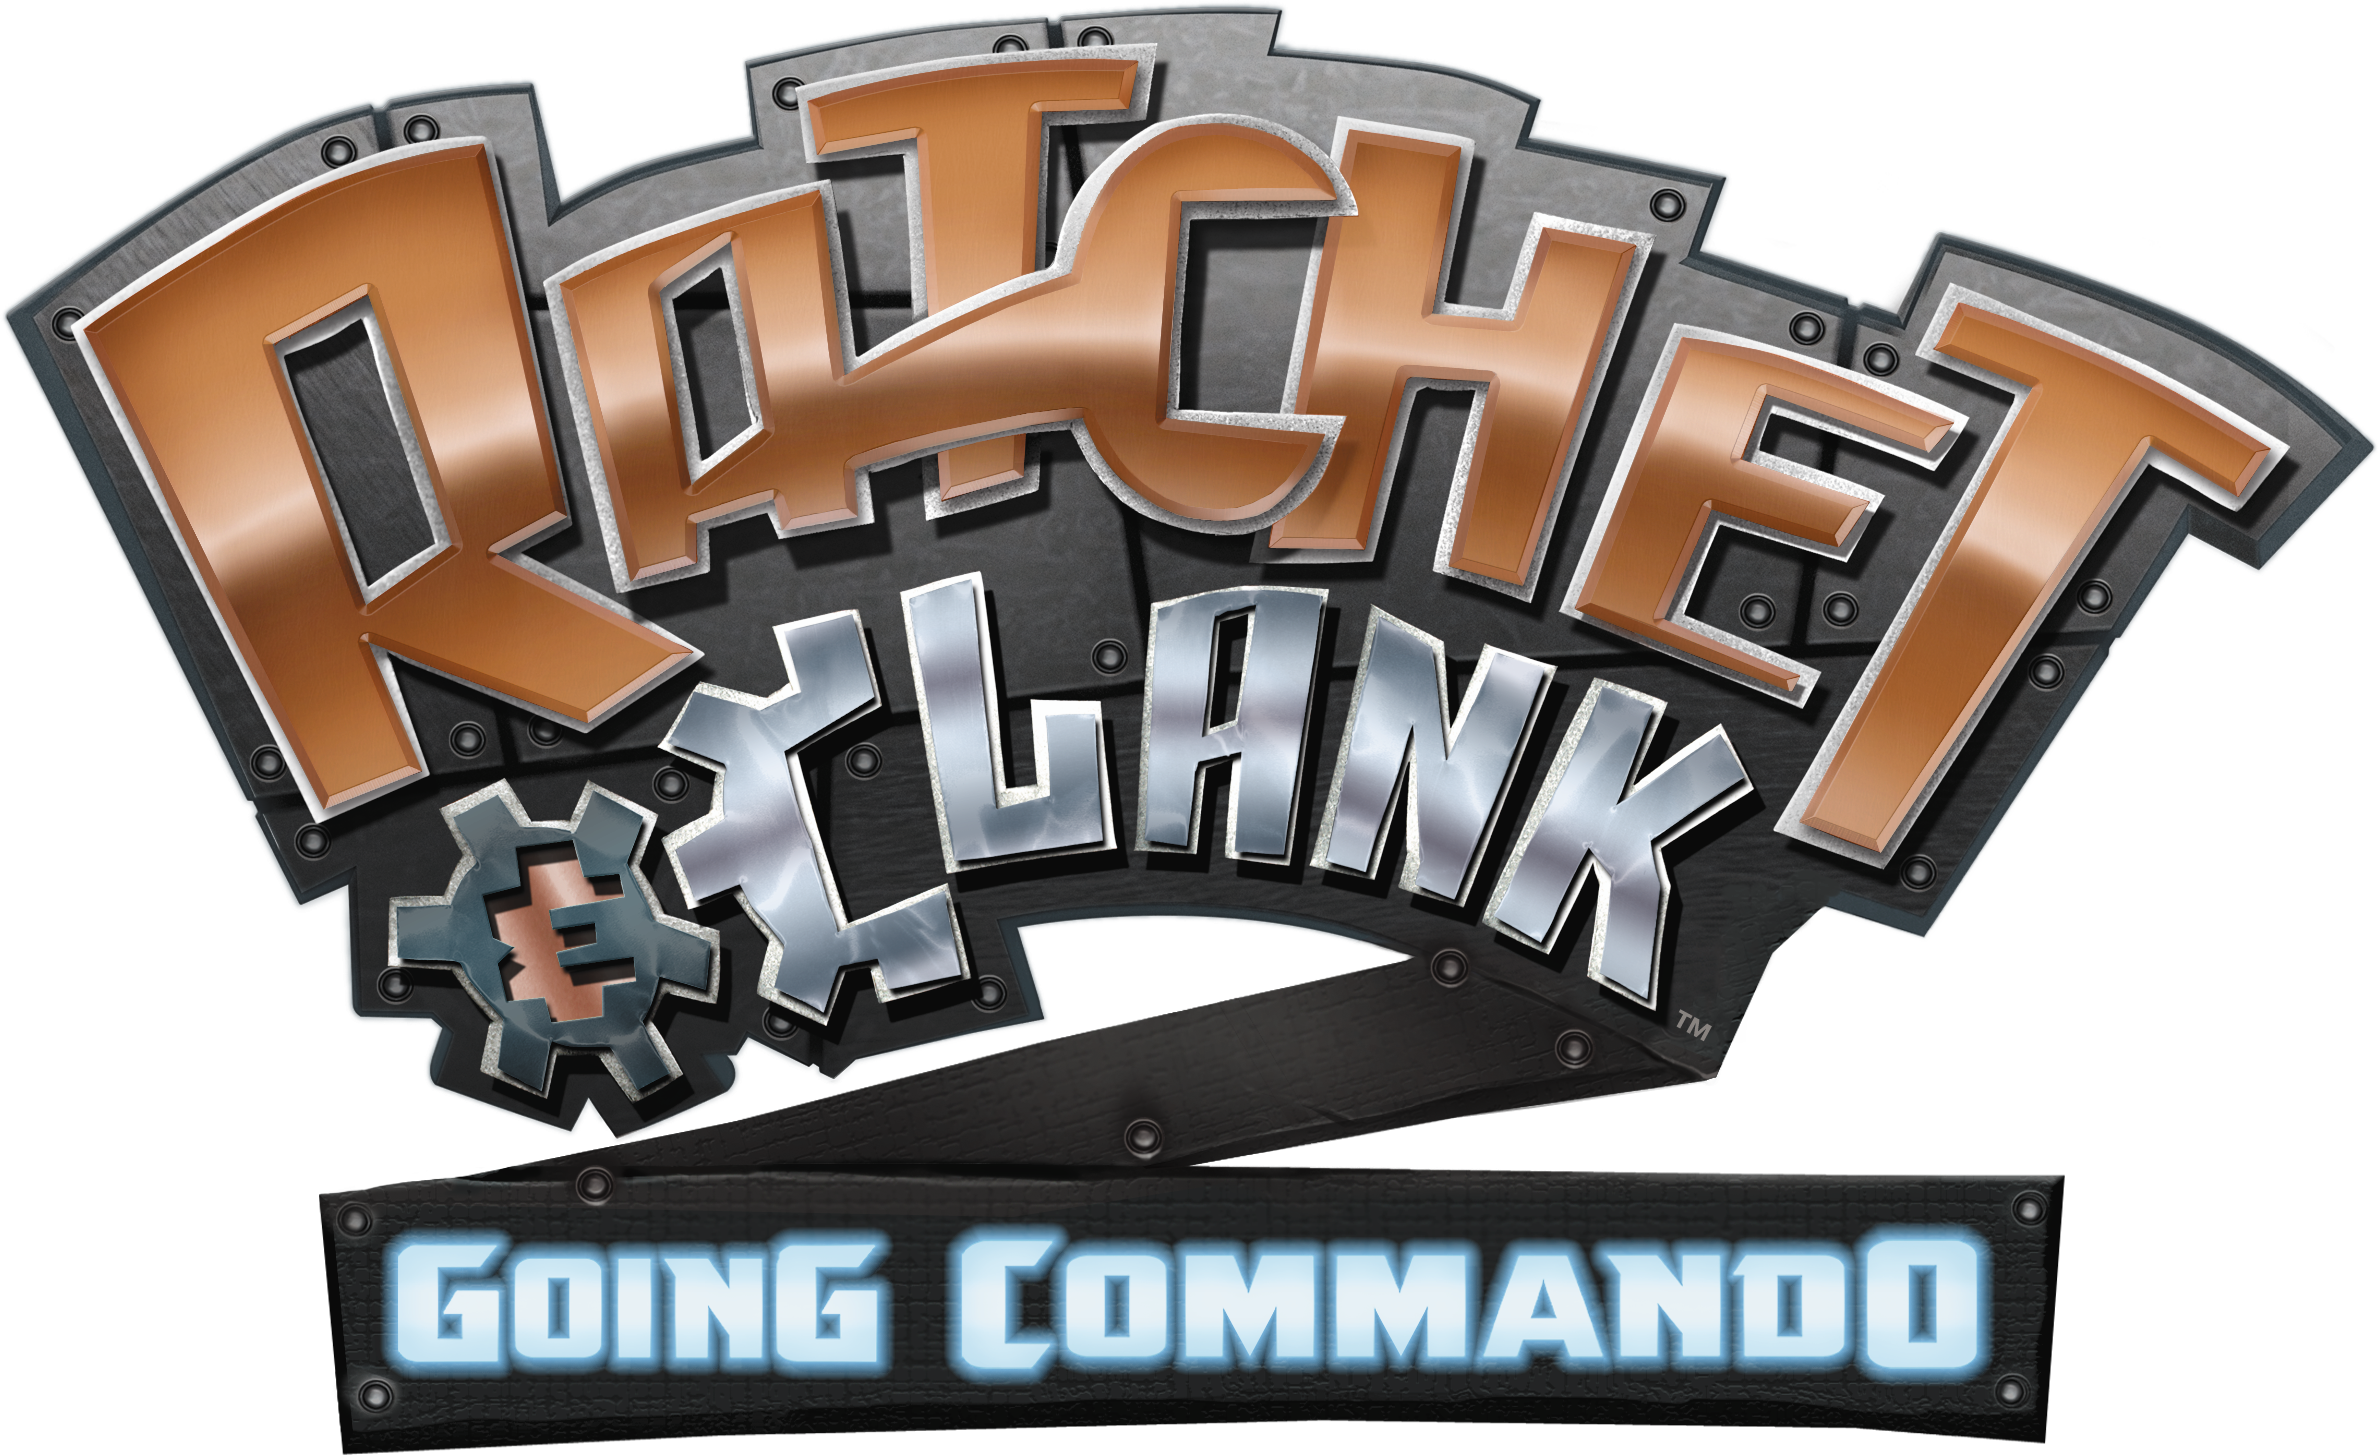 Ratchet & Clank Going Commando